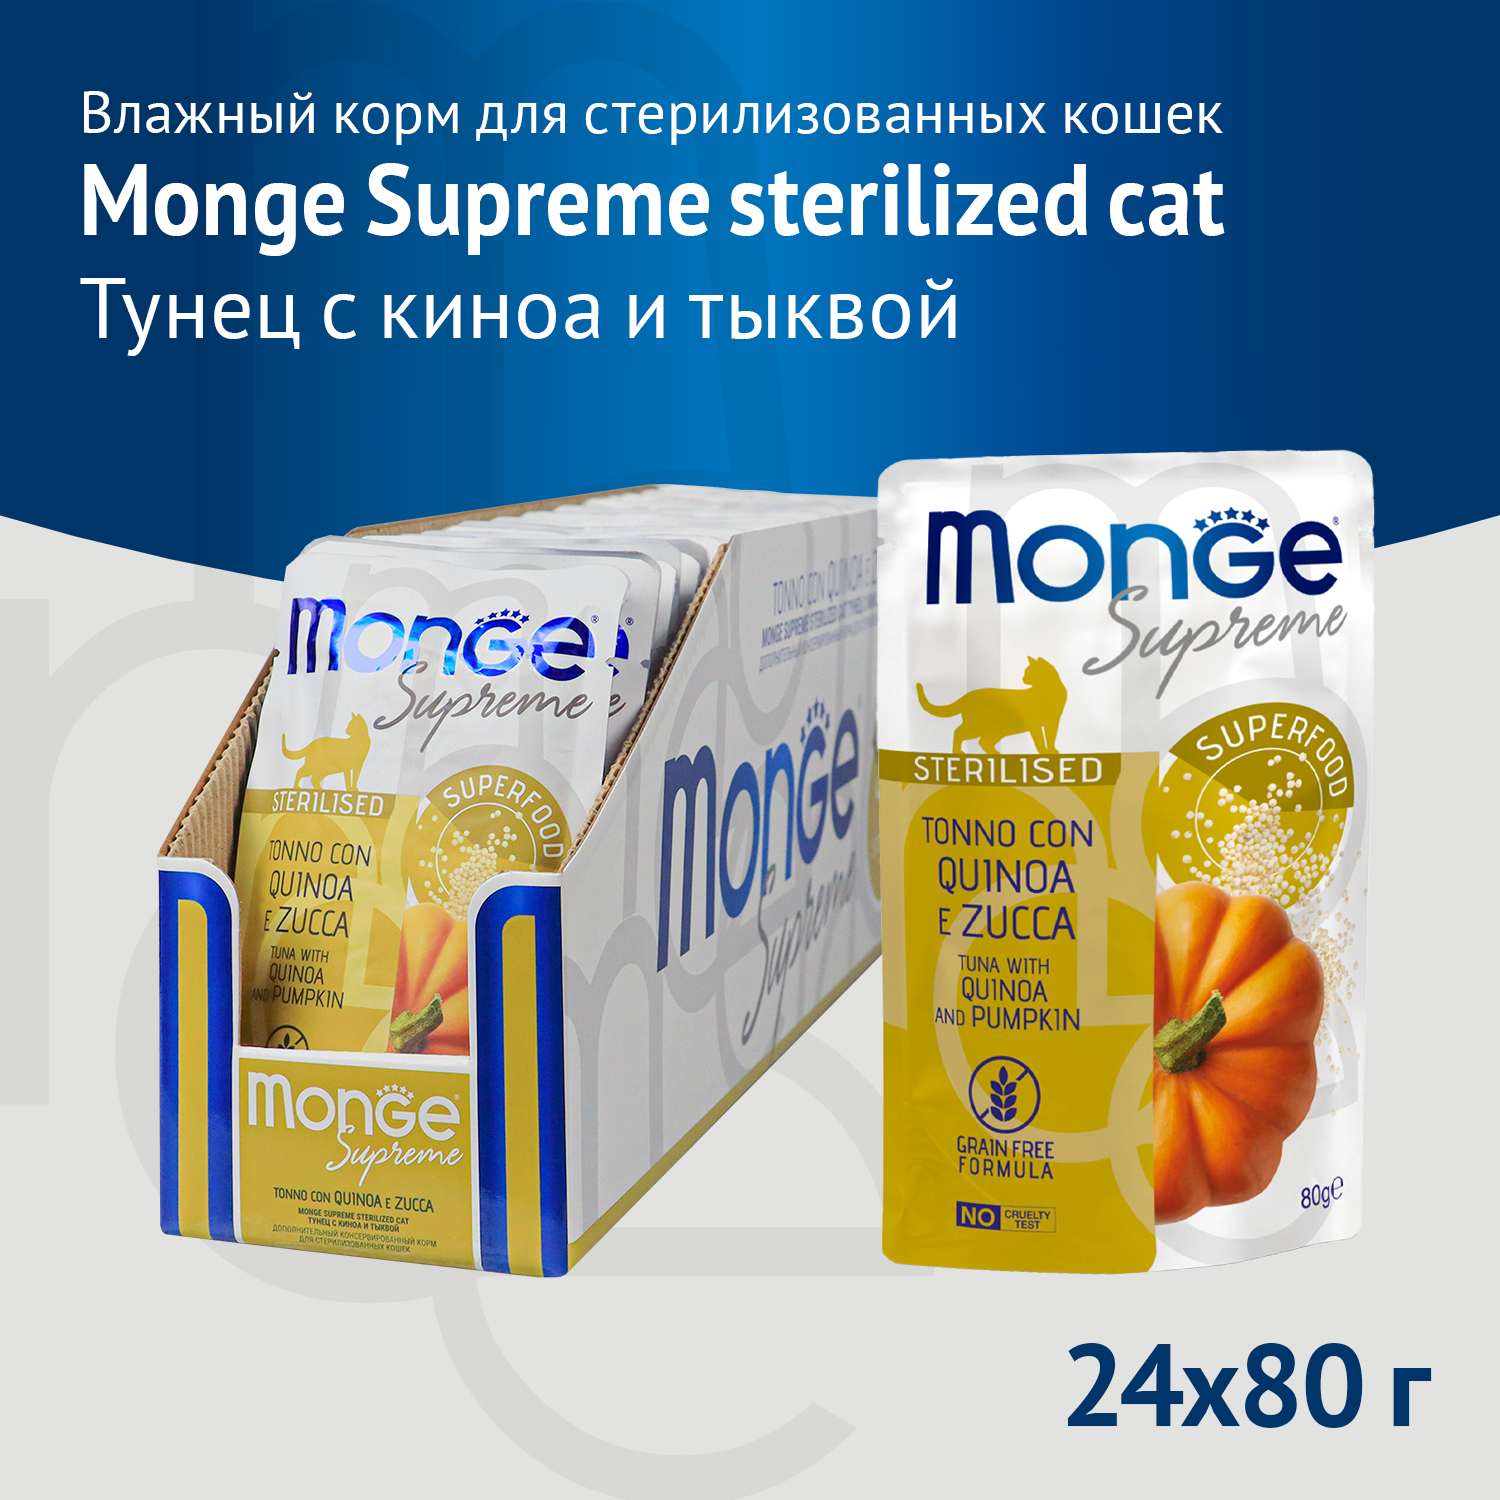 Влажный корм Monge Supreme sterilized cat для стерилизованных кошек из тунца с киноа и тыквой, паучи 80 г